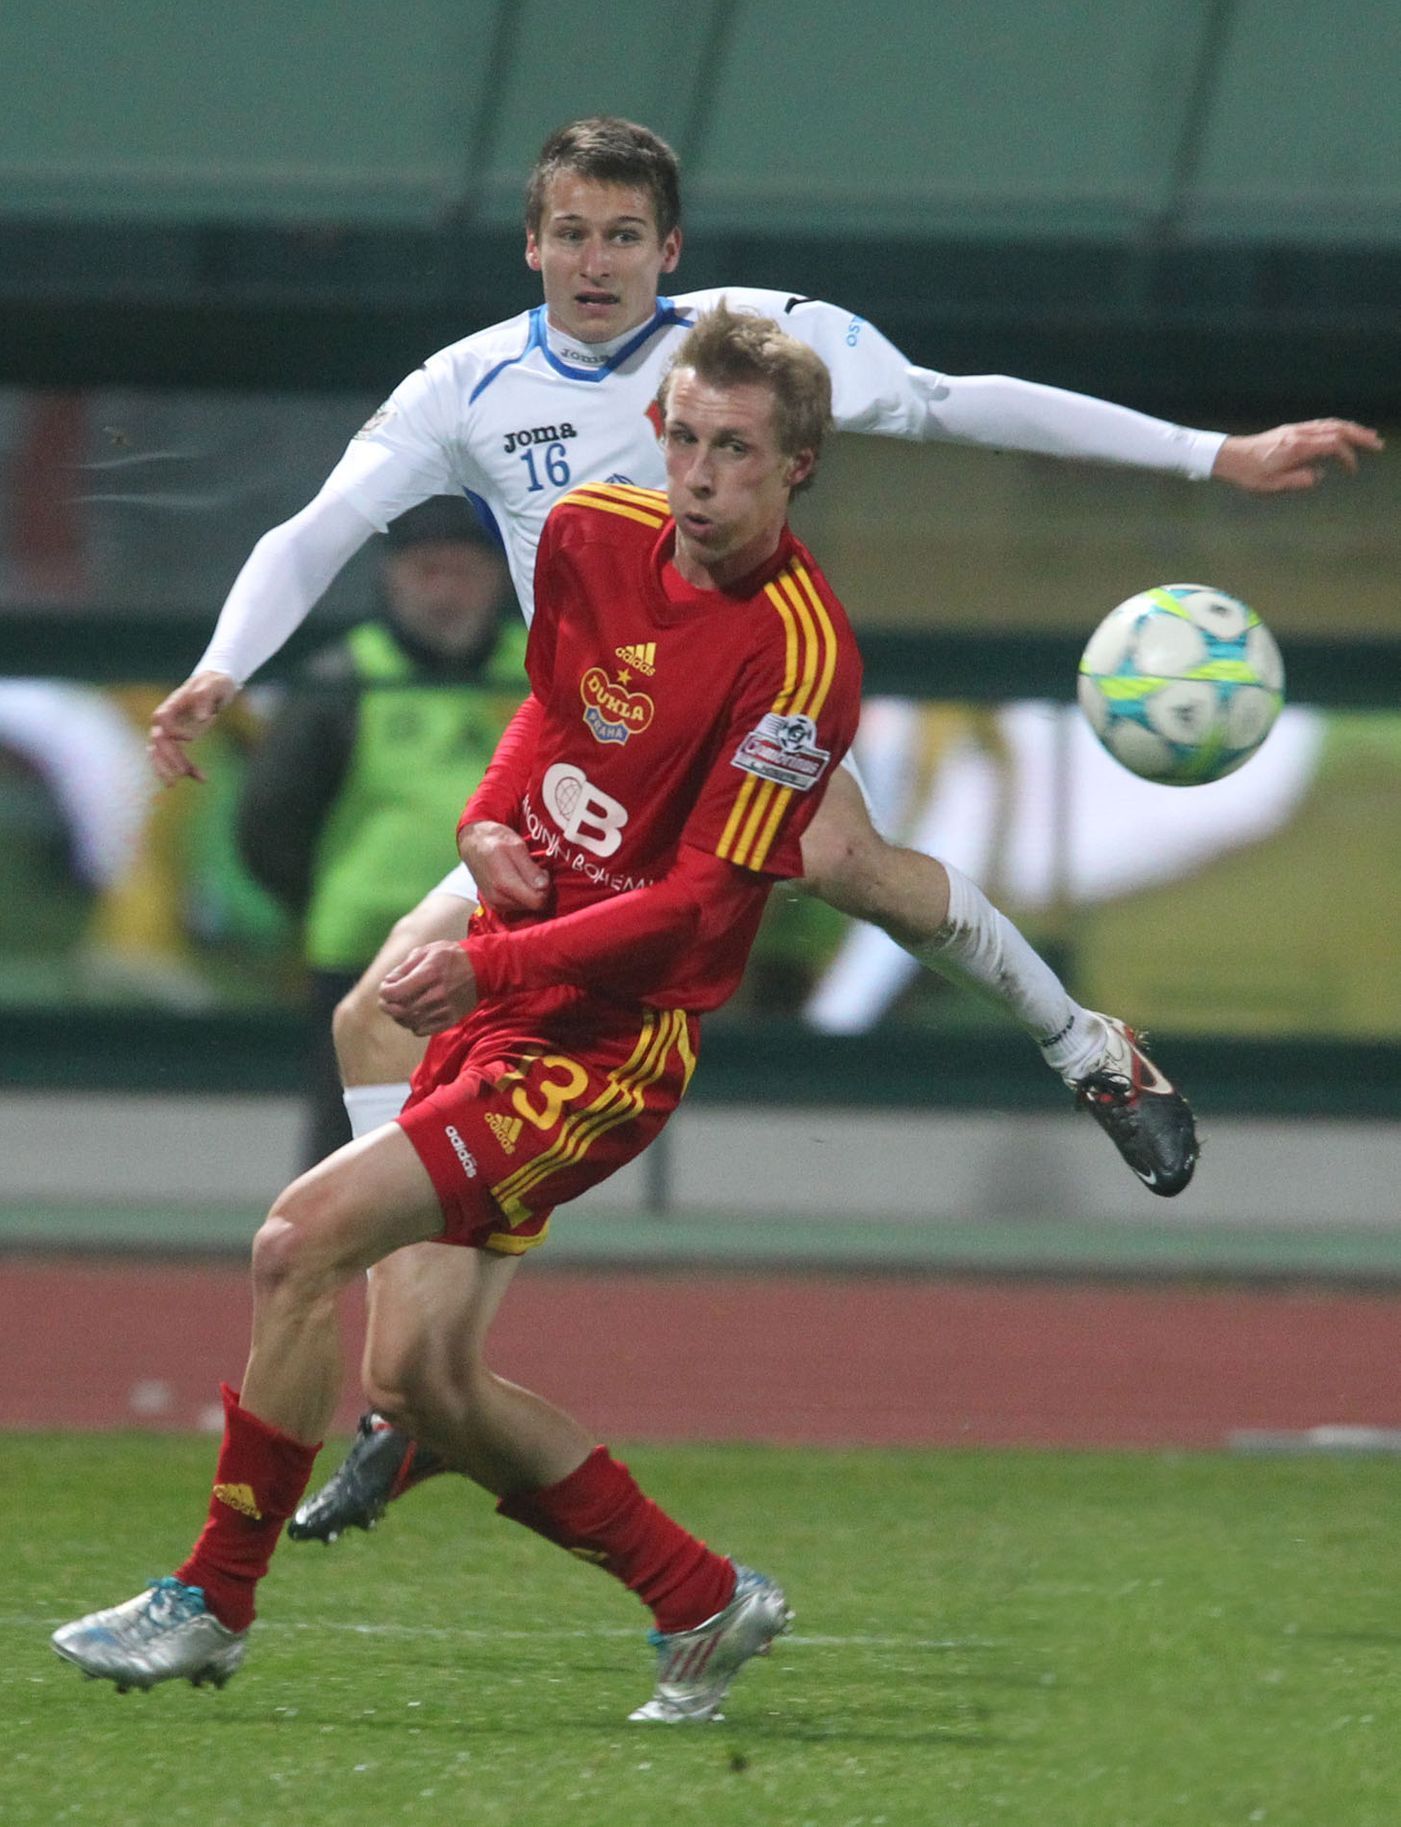 Fotbalista Dukly Praha Tomáš Berger v souboji s Janem Zawadou v utkání proti Baníku Ostrava ve 14. kole Gambrinus ligy 2012/13.